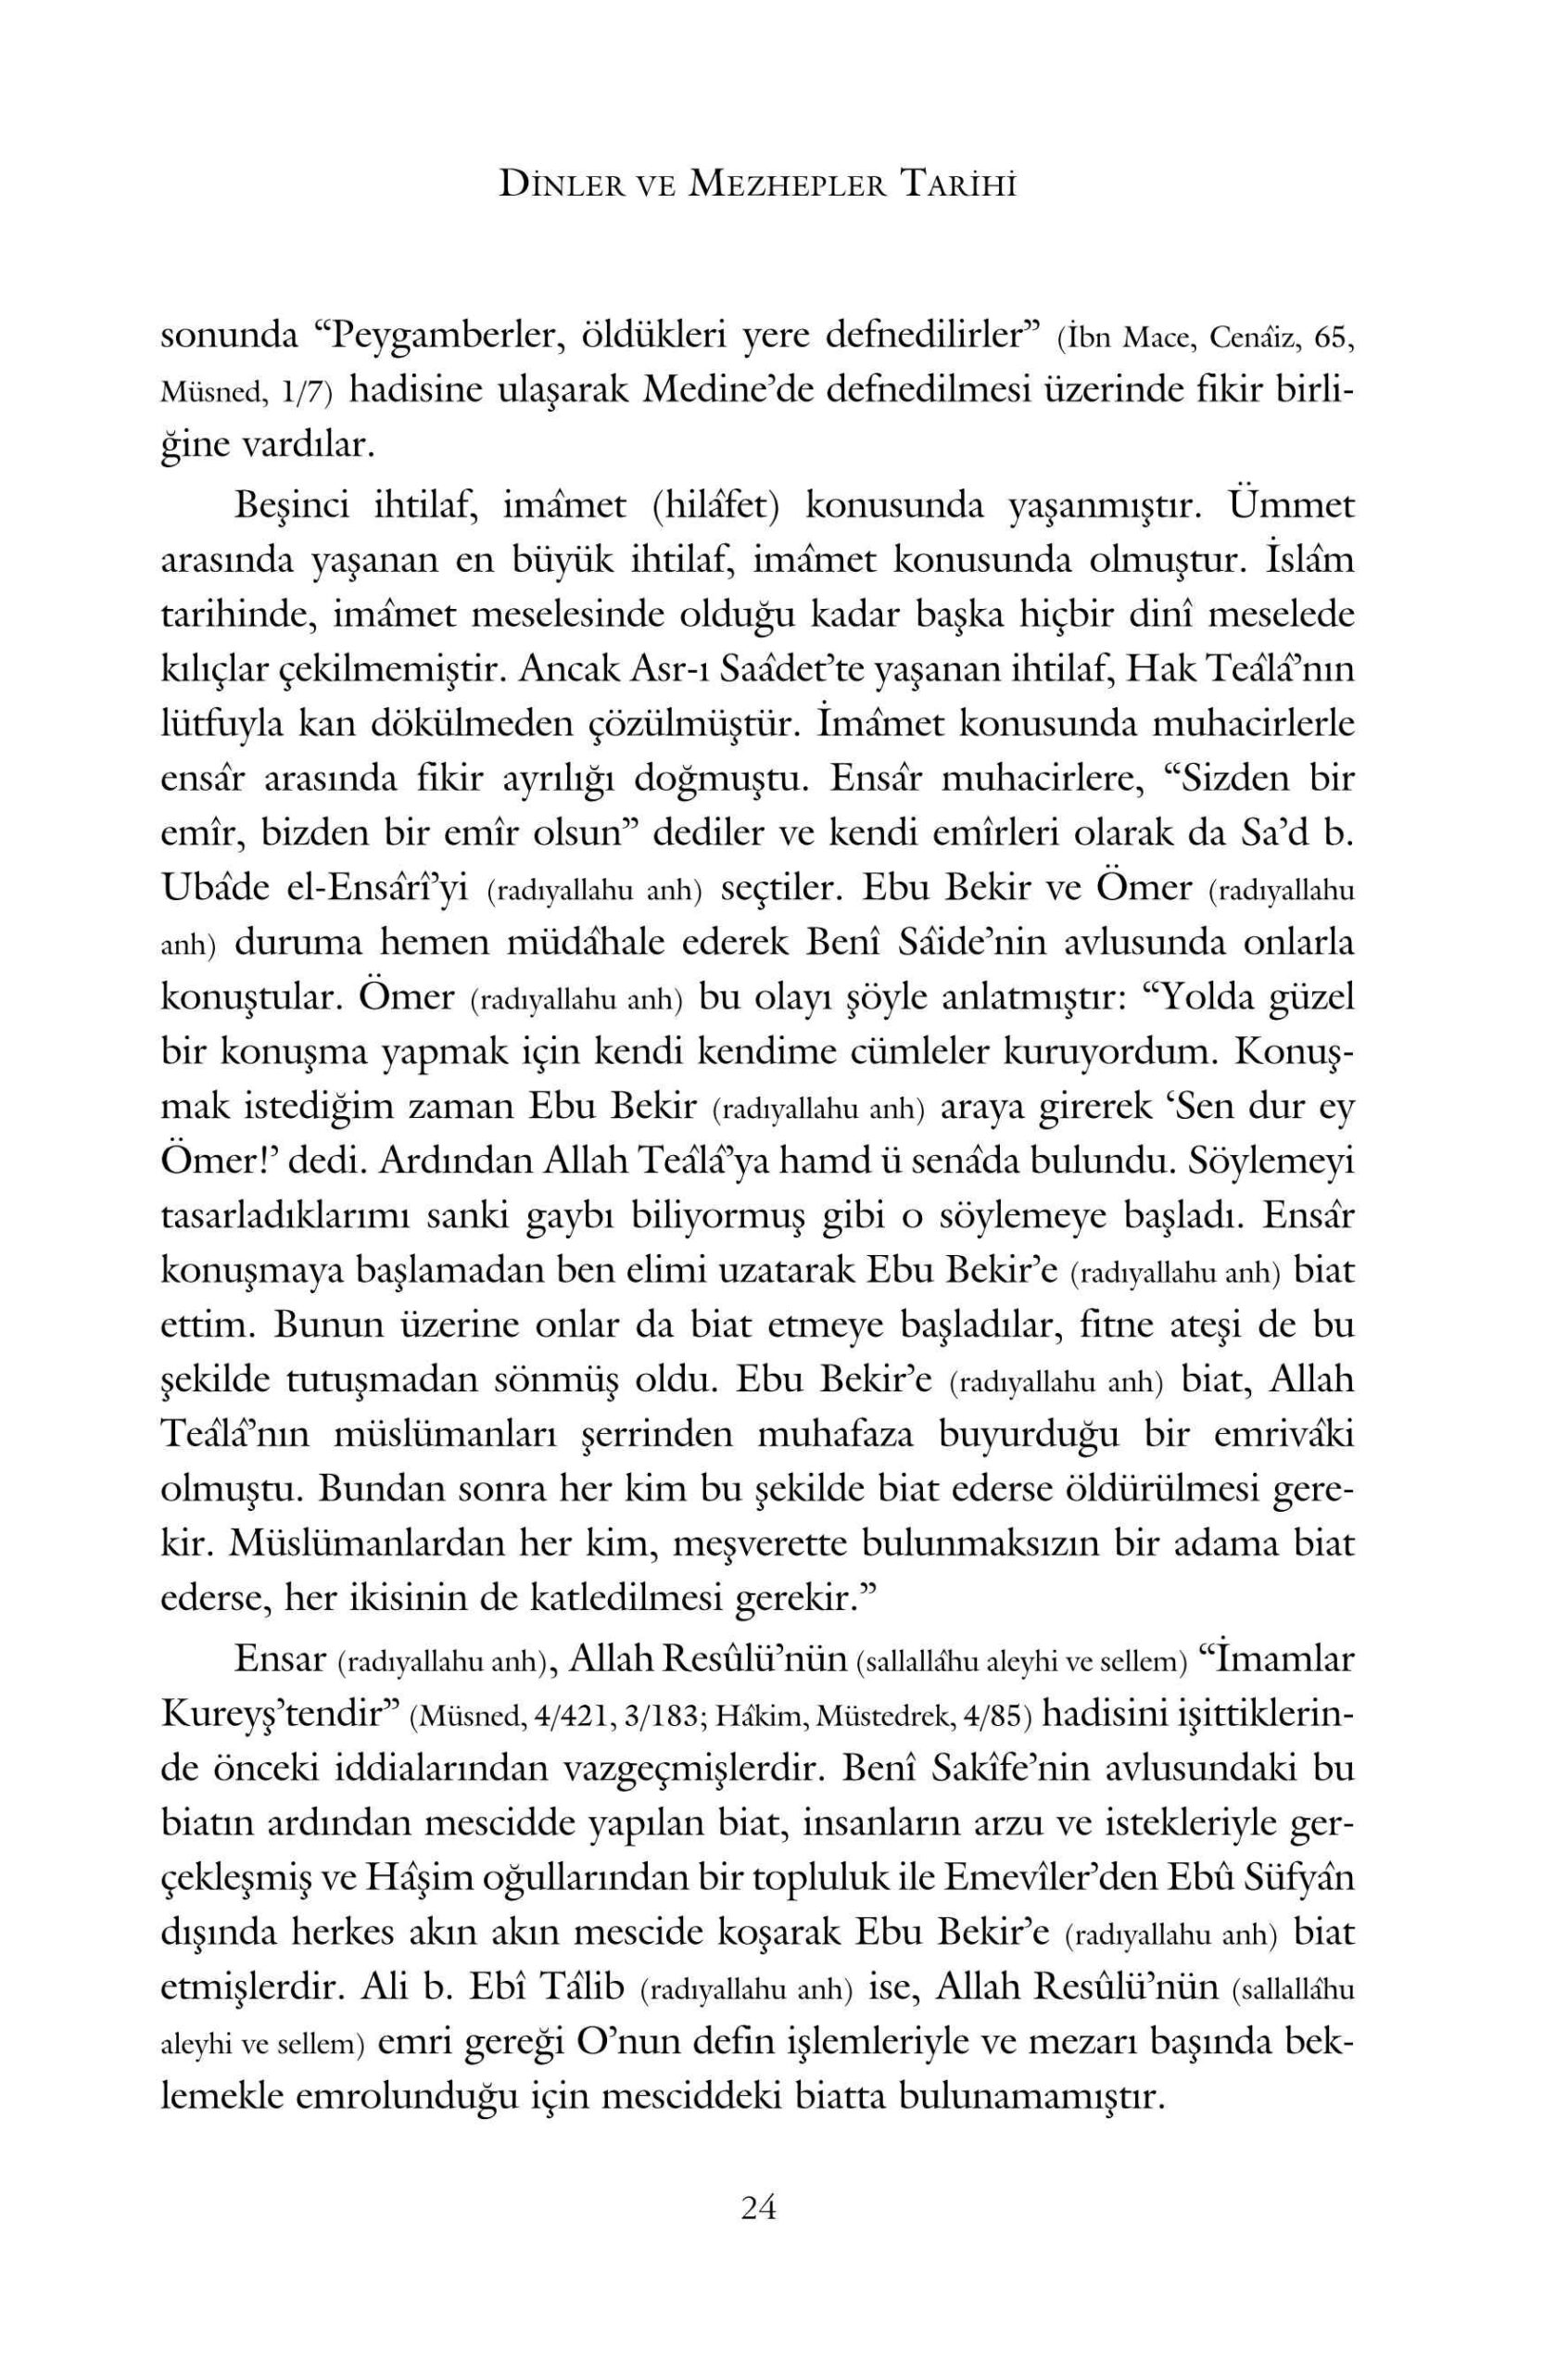 Muhammed Bin Abdulkerim Es Sehristani - Dinler ve Mezhepler Tarihi - IsikAkademiY.pdf, 535-Sayfa 